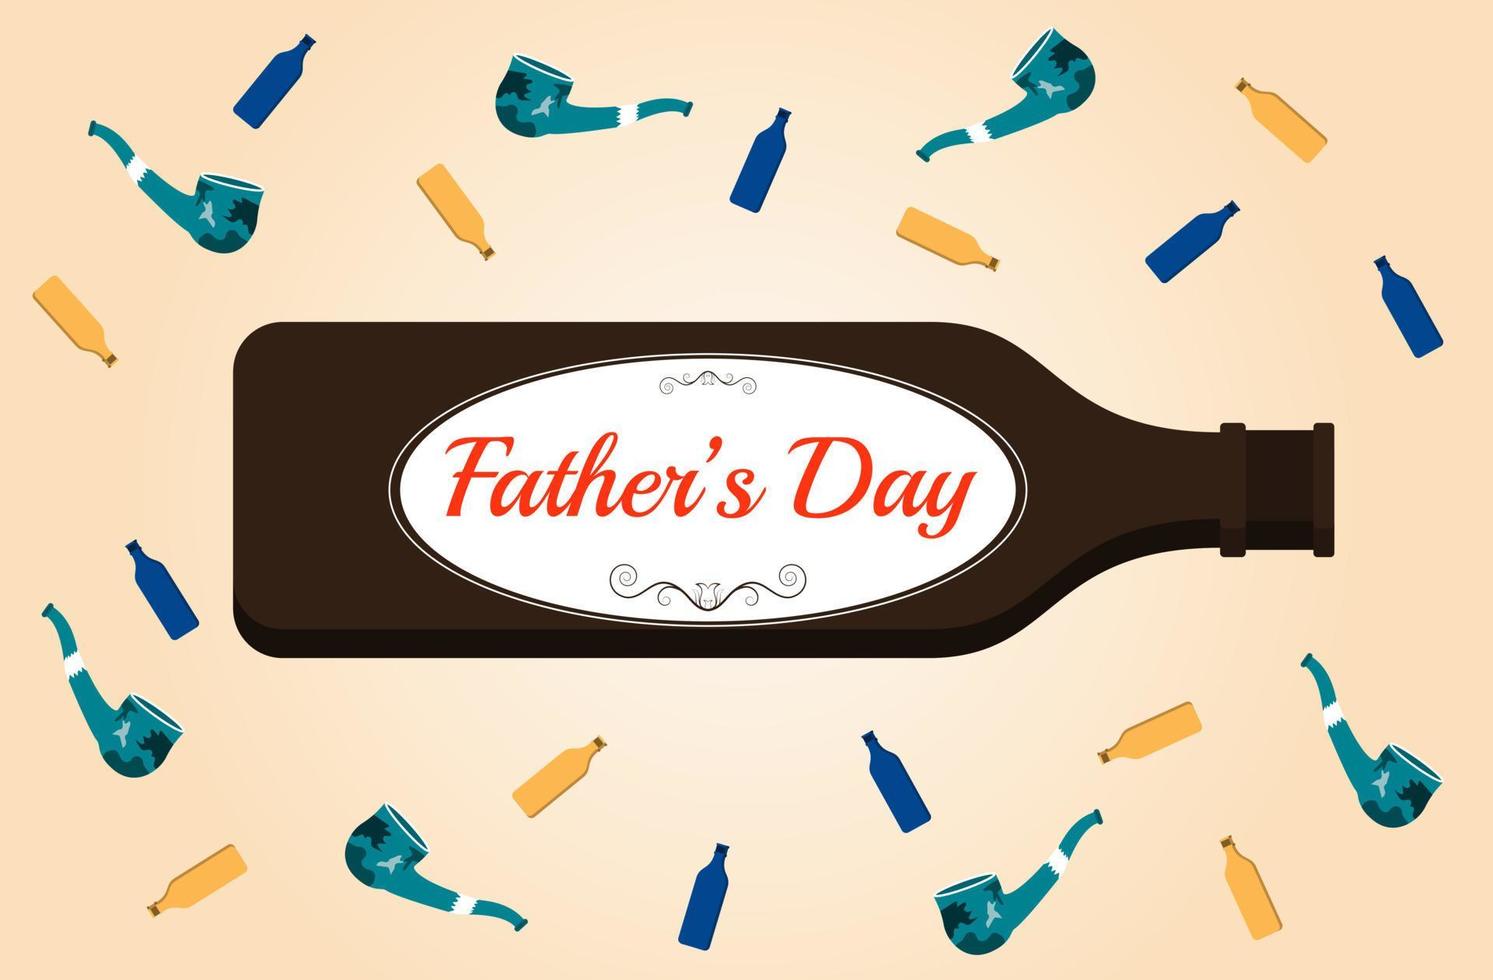 Letras del día del padre en una botella de cerveza y rodeadas de pipas y vasos pequeños. el diseño expresa masculinidad. vector